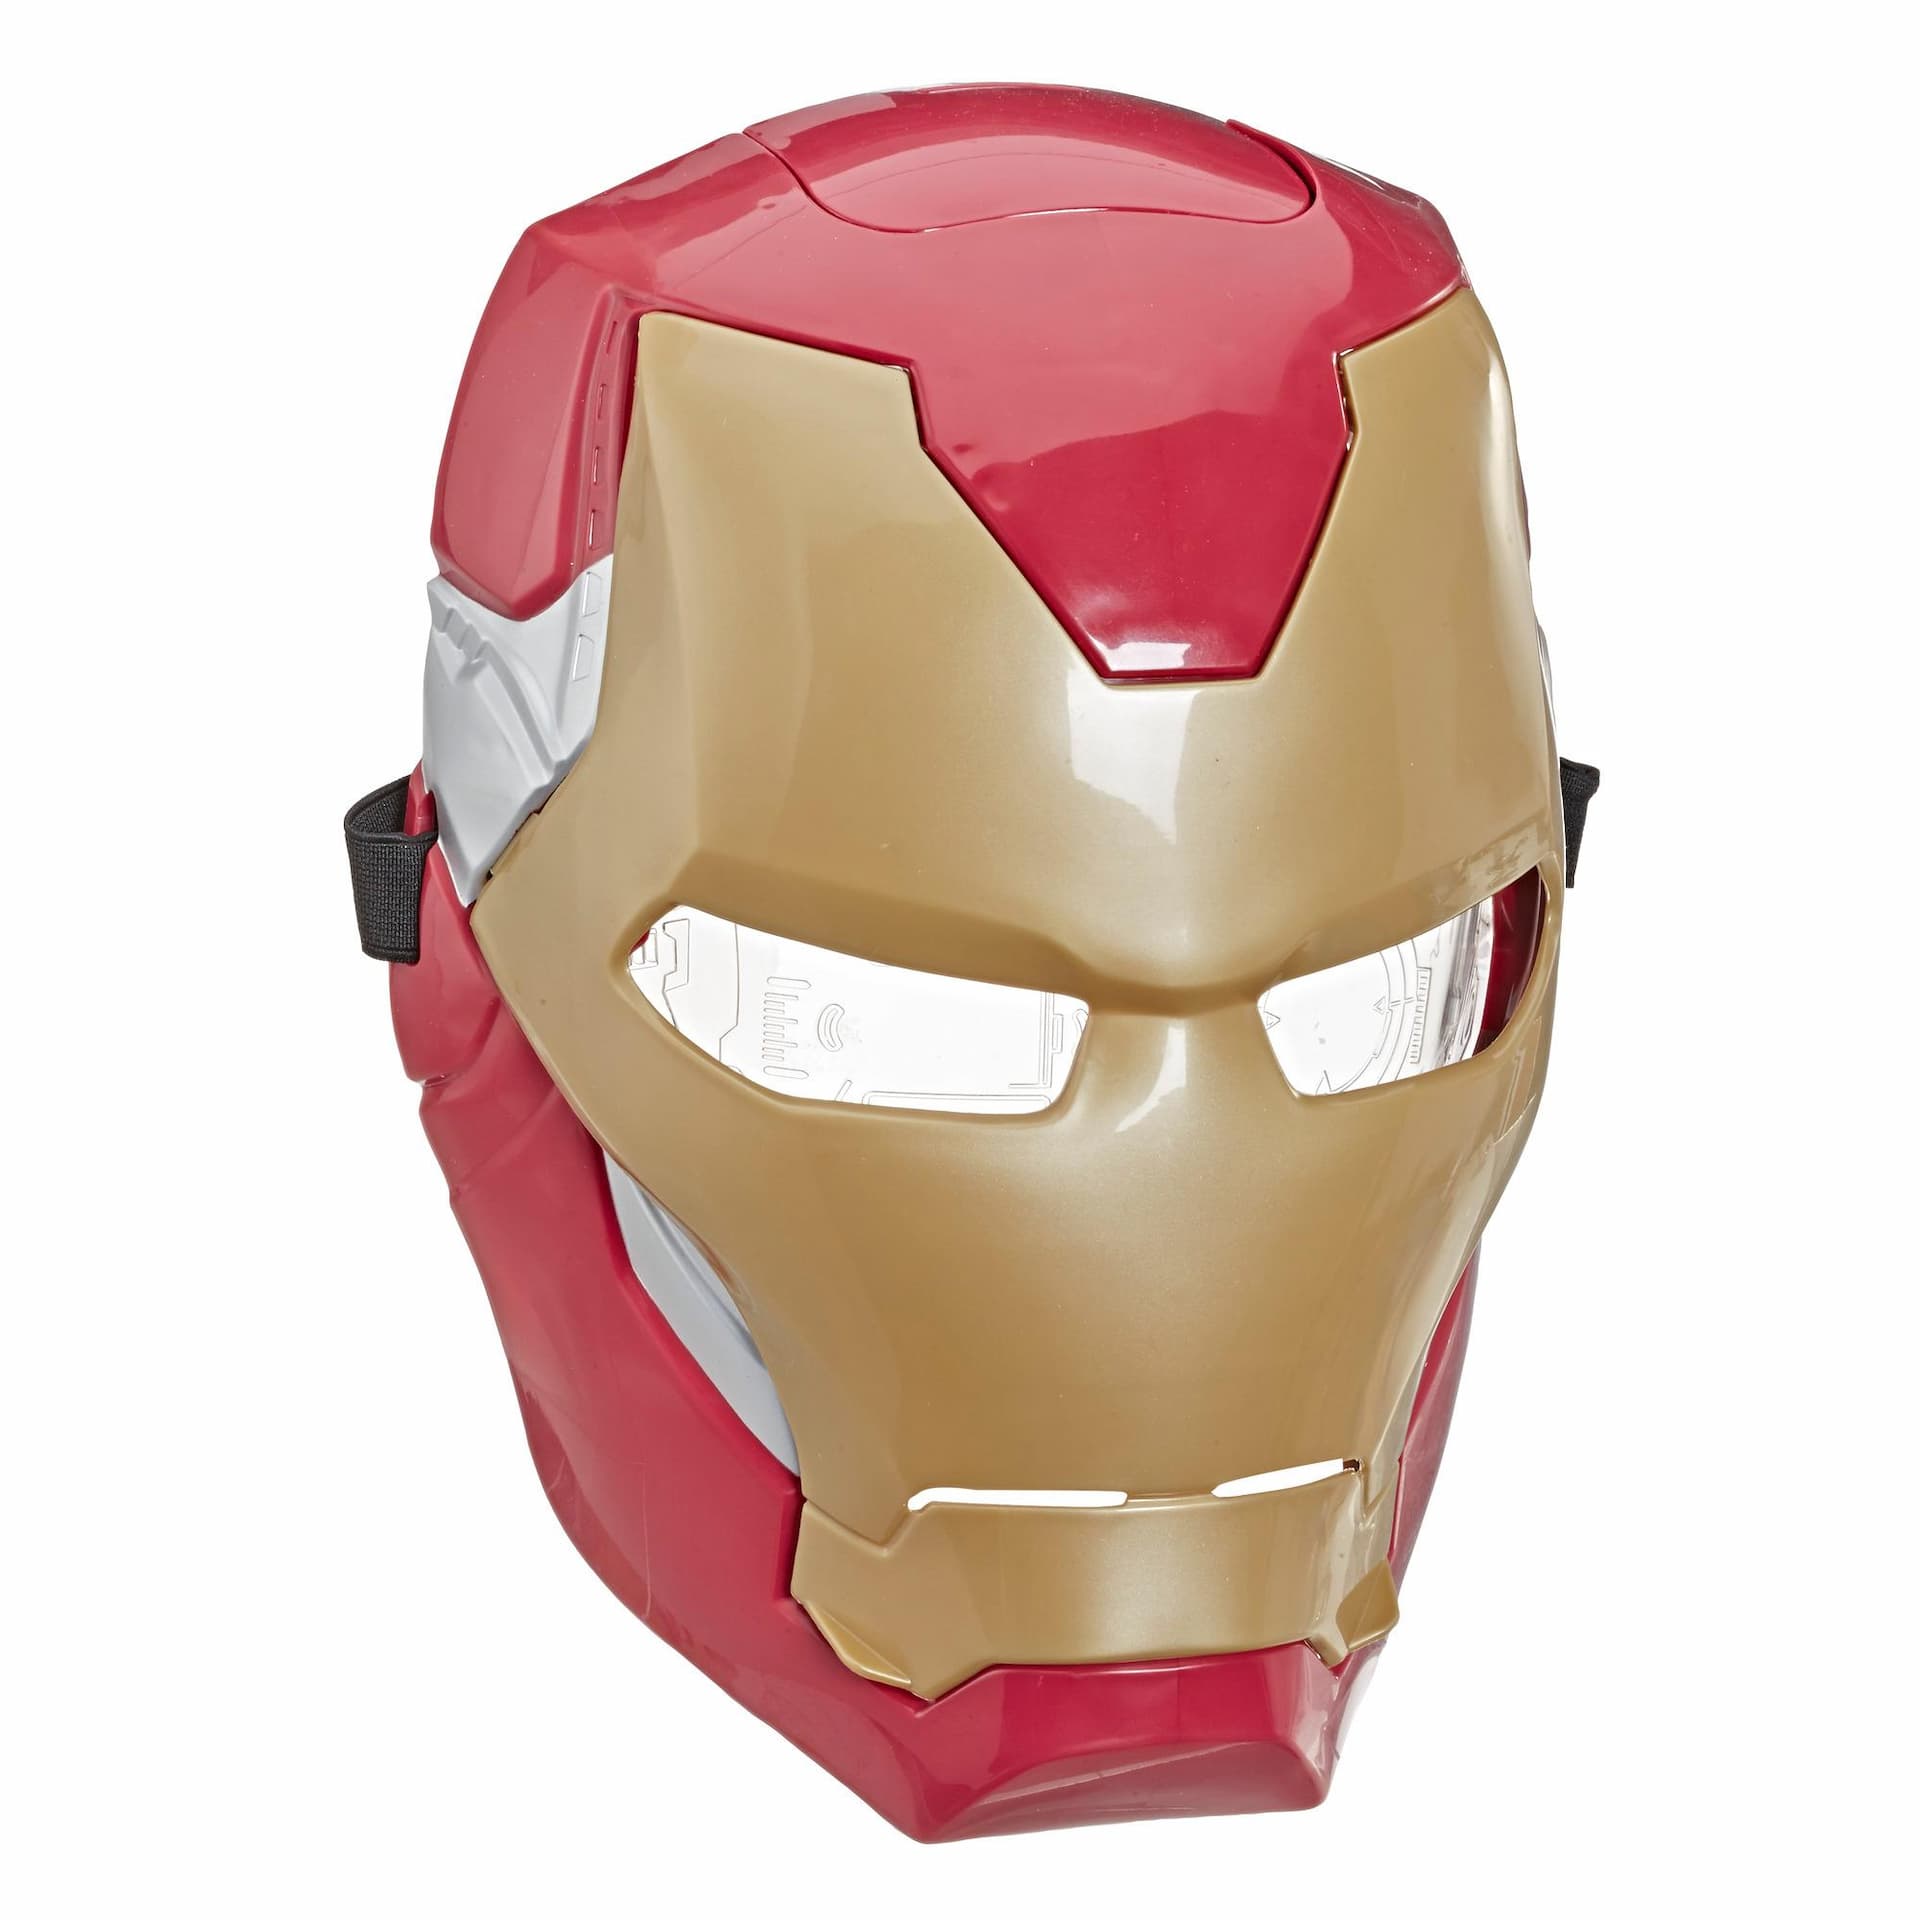 Marvel Avengers Masque à visière mobile d'Iron Man avec effets lumineux activés par la visière pour jeu costumé et jeu de rôle